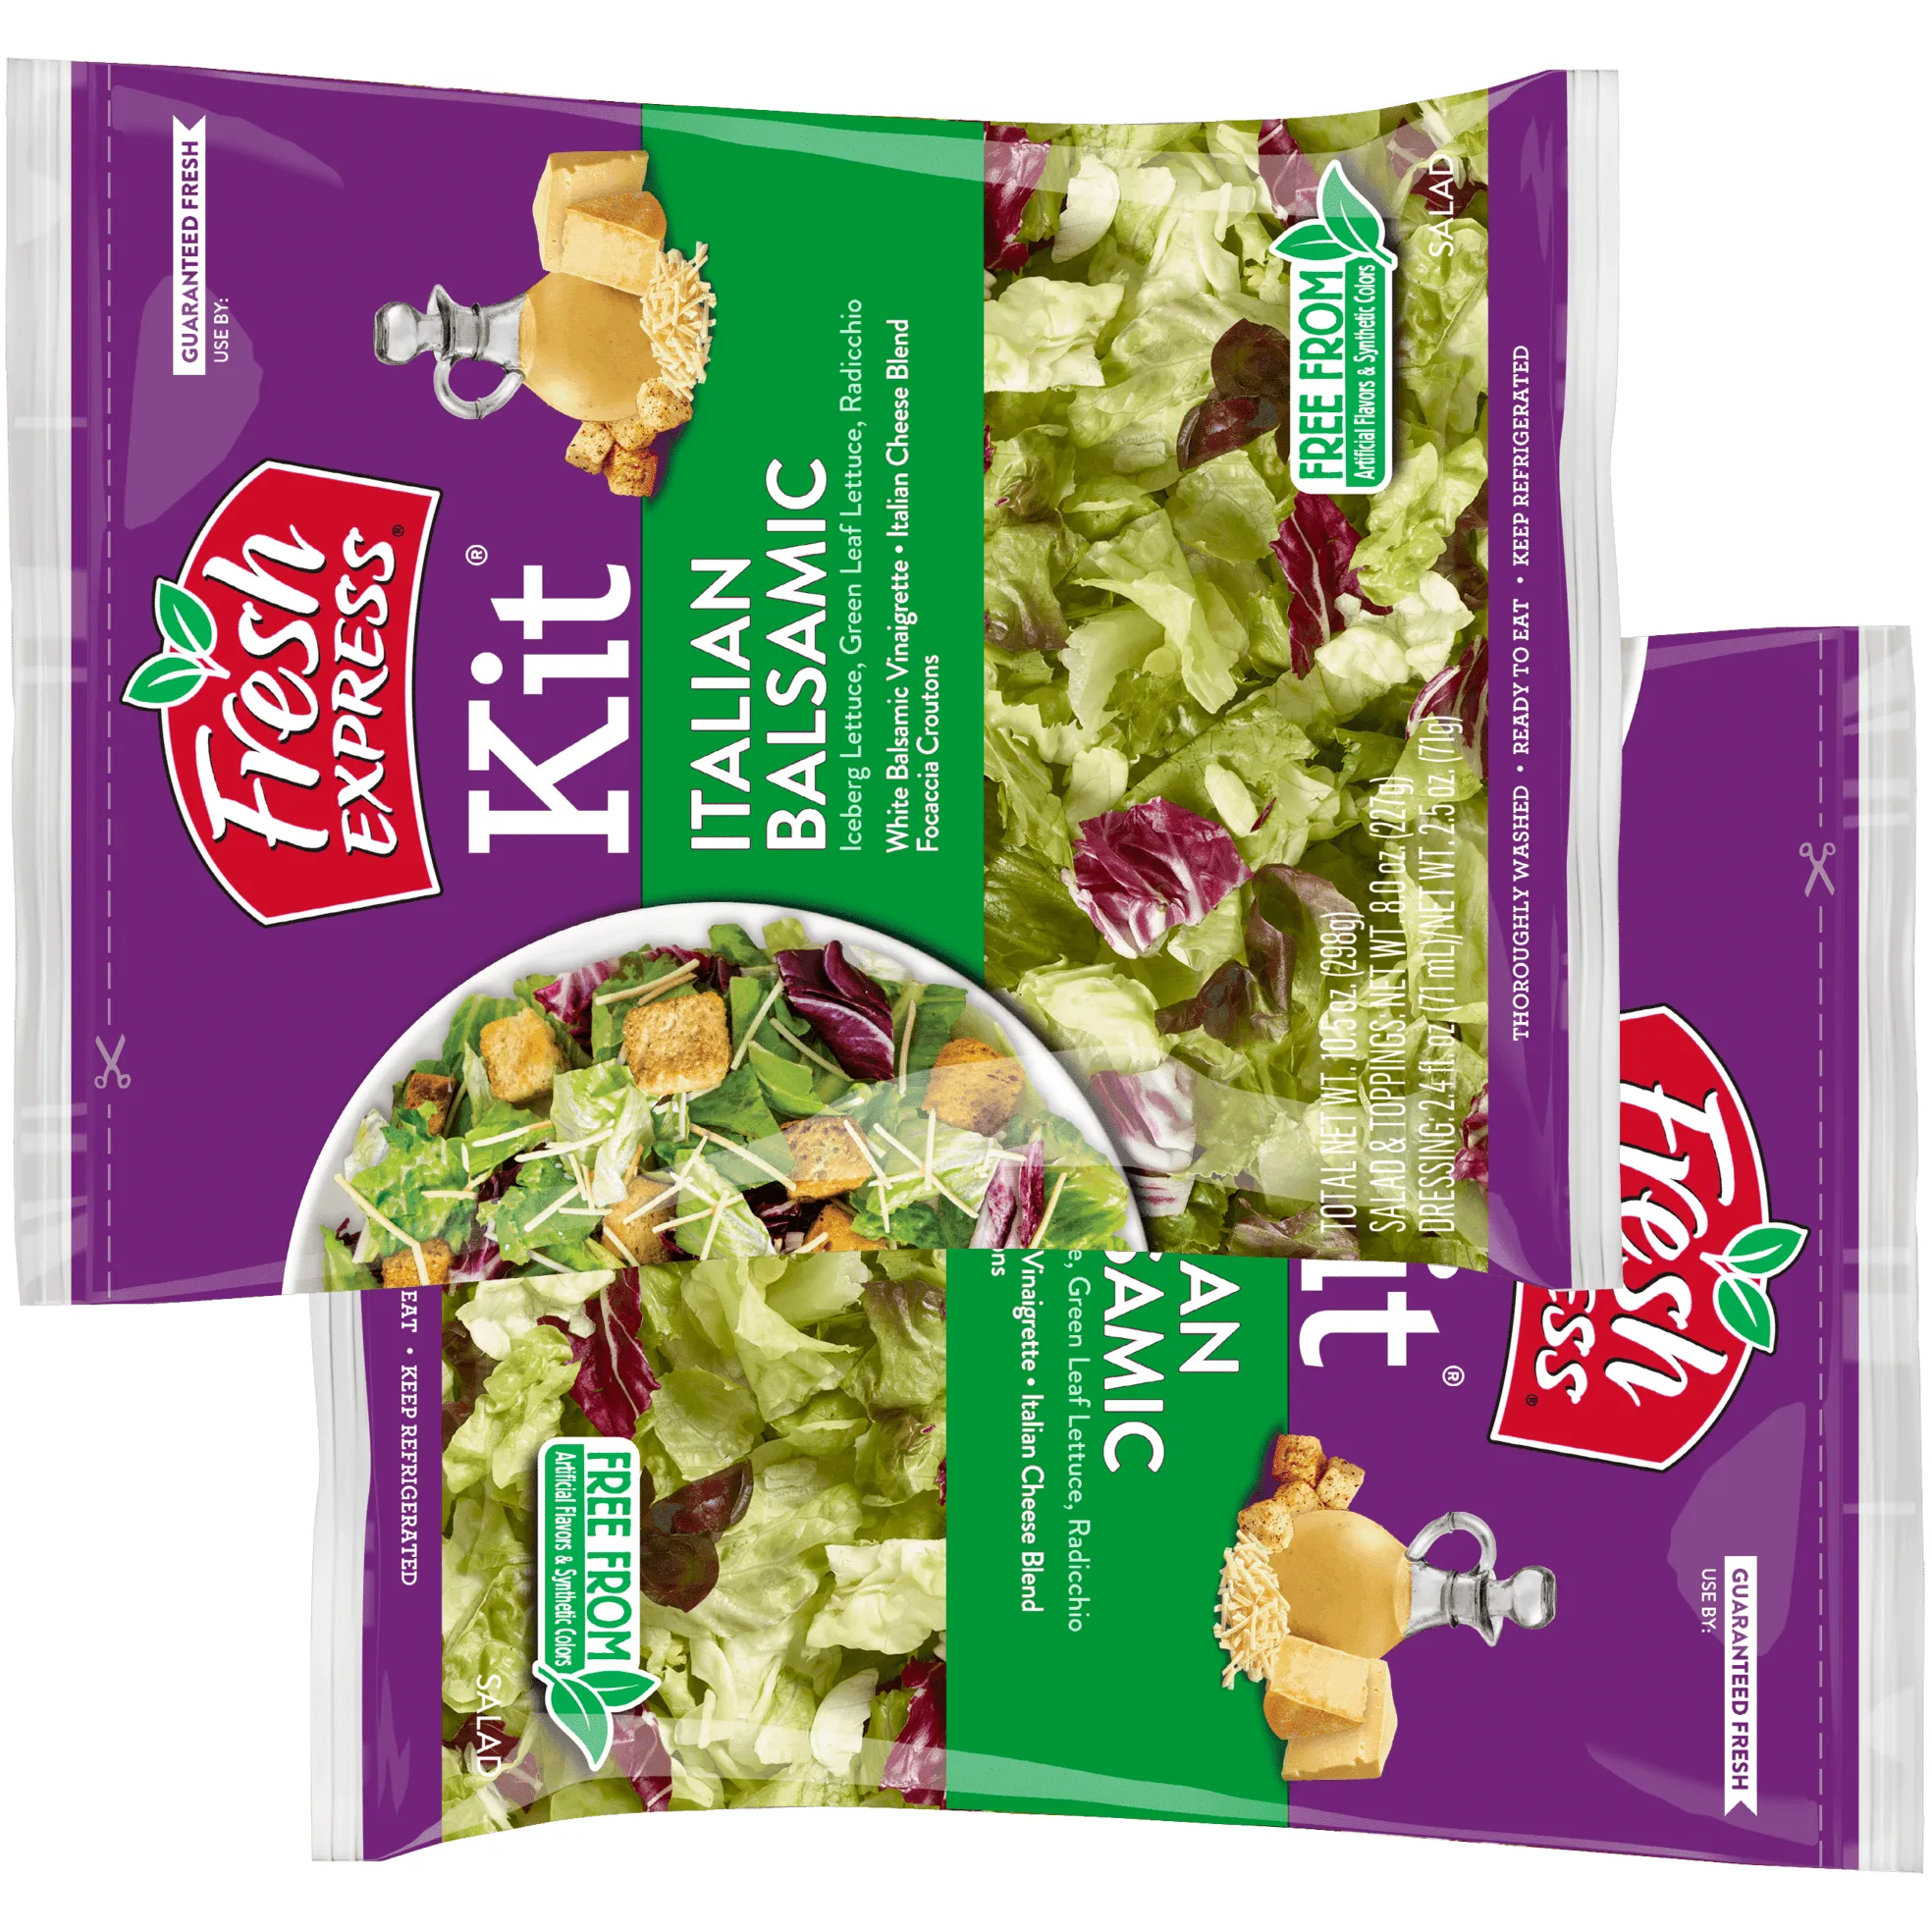 Free Bag Of Fresh Express Salad